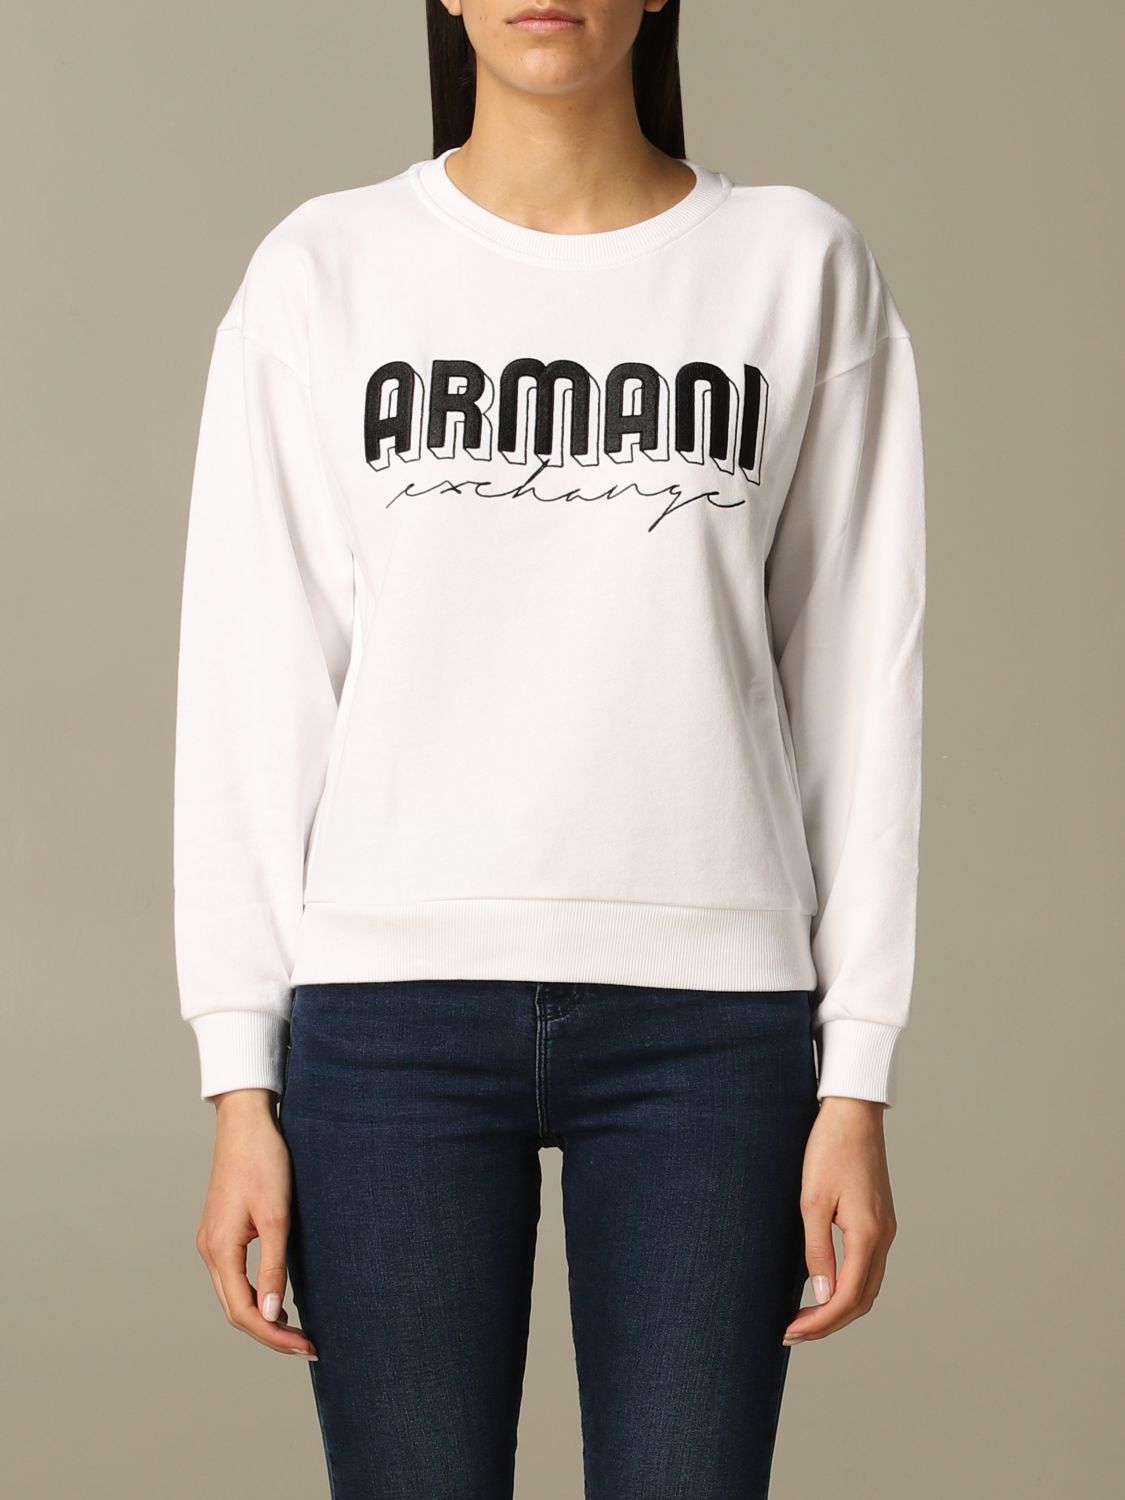 armani exchange women's sweatshirt